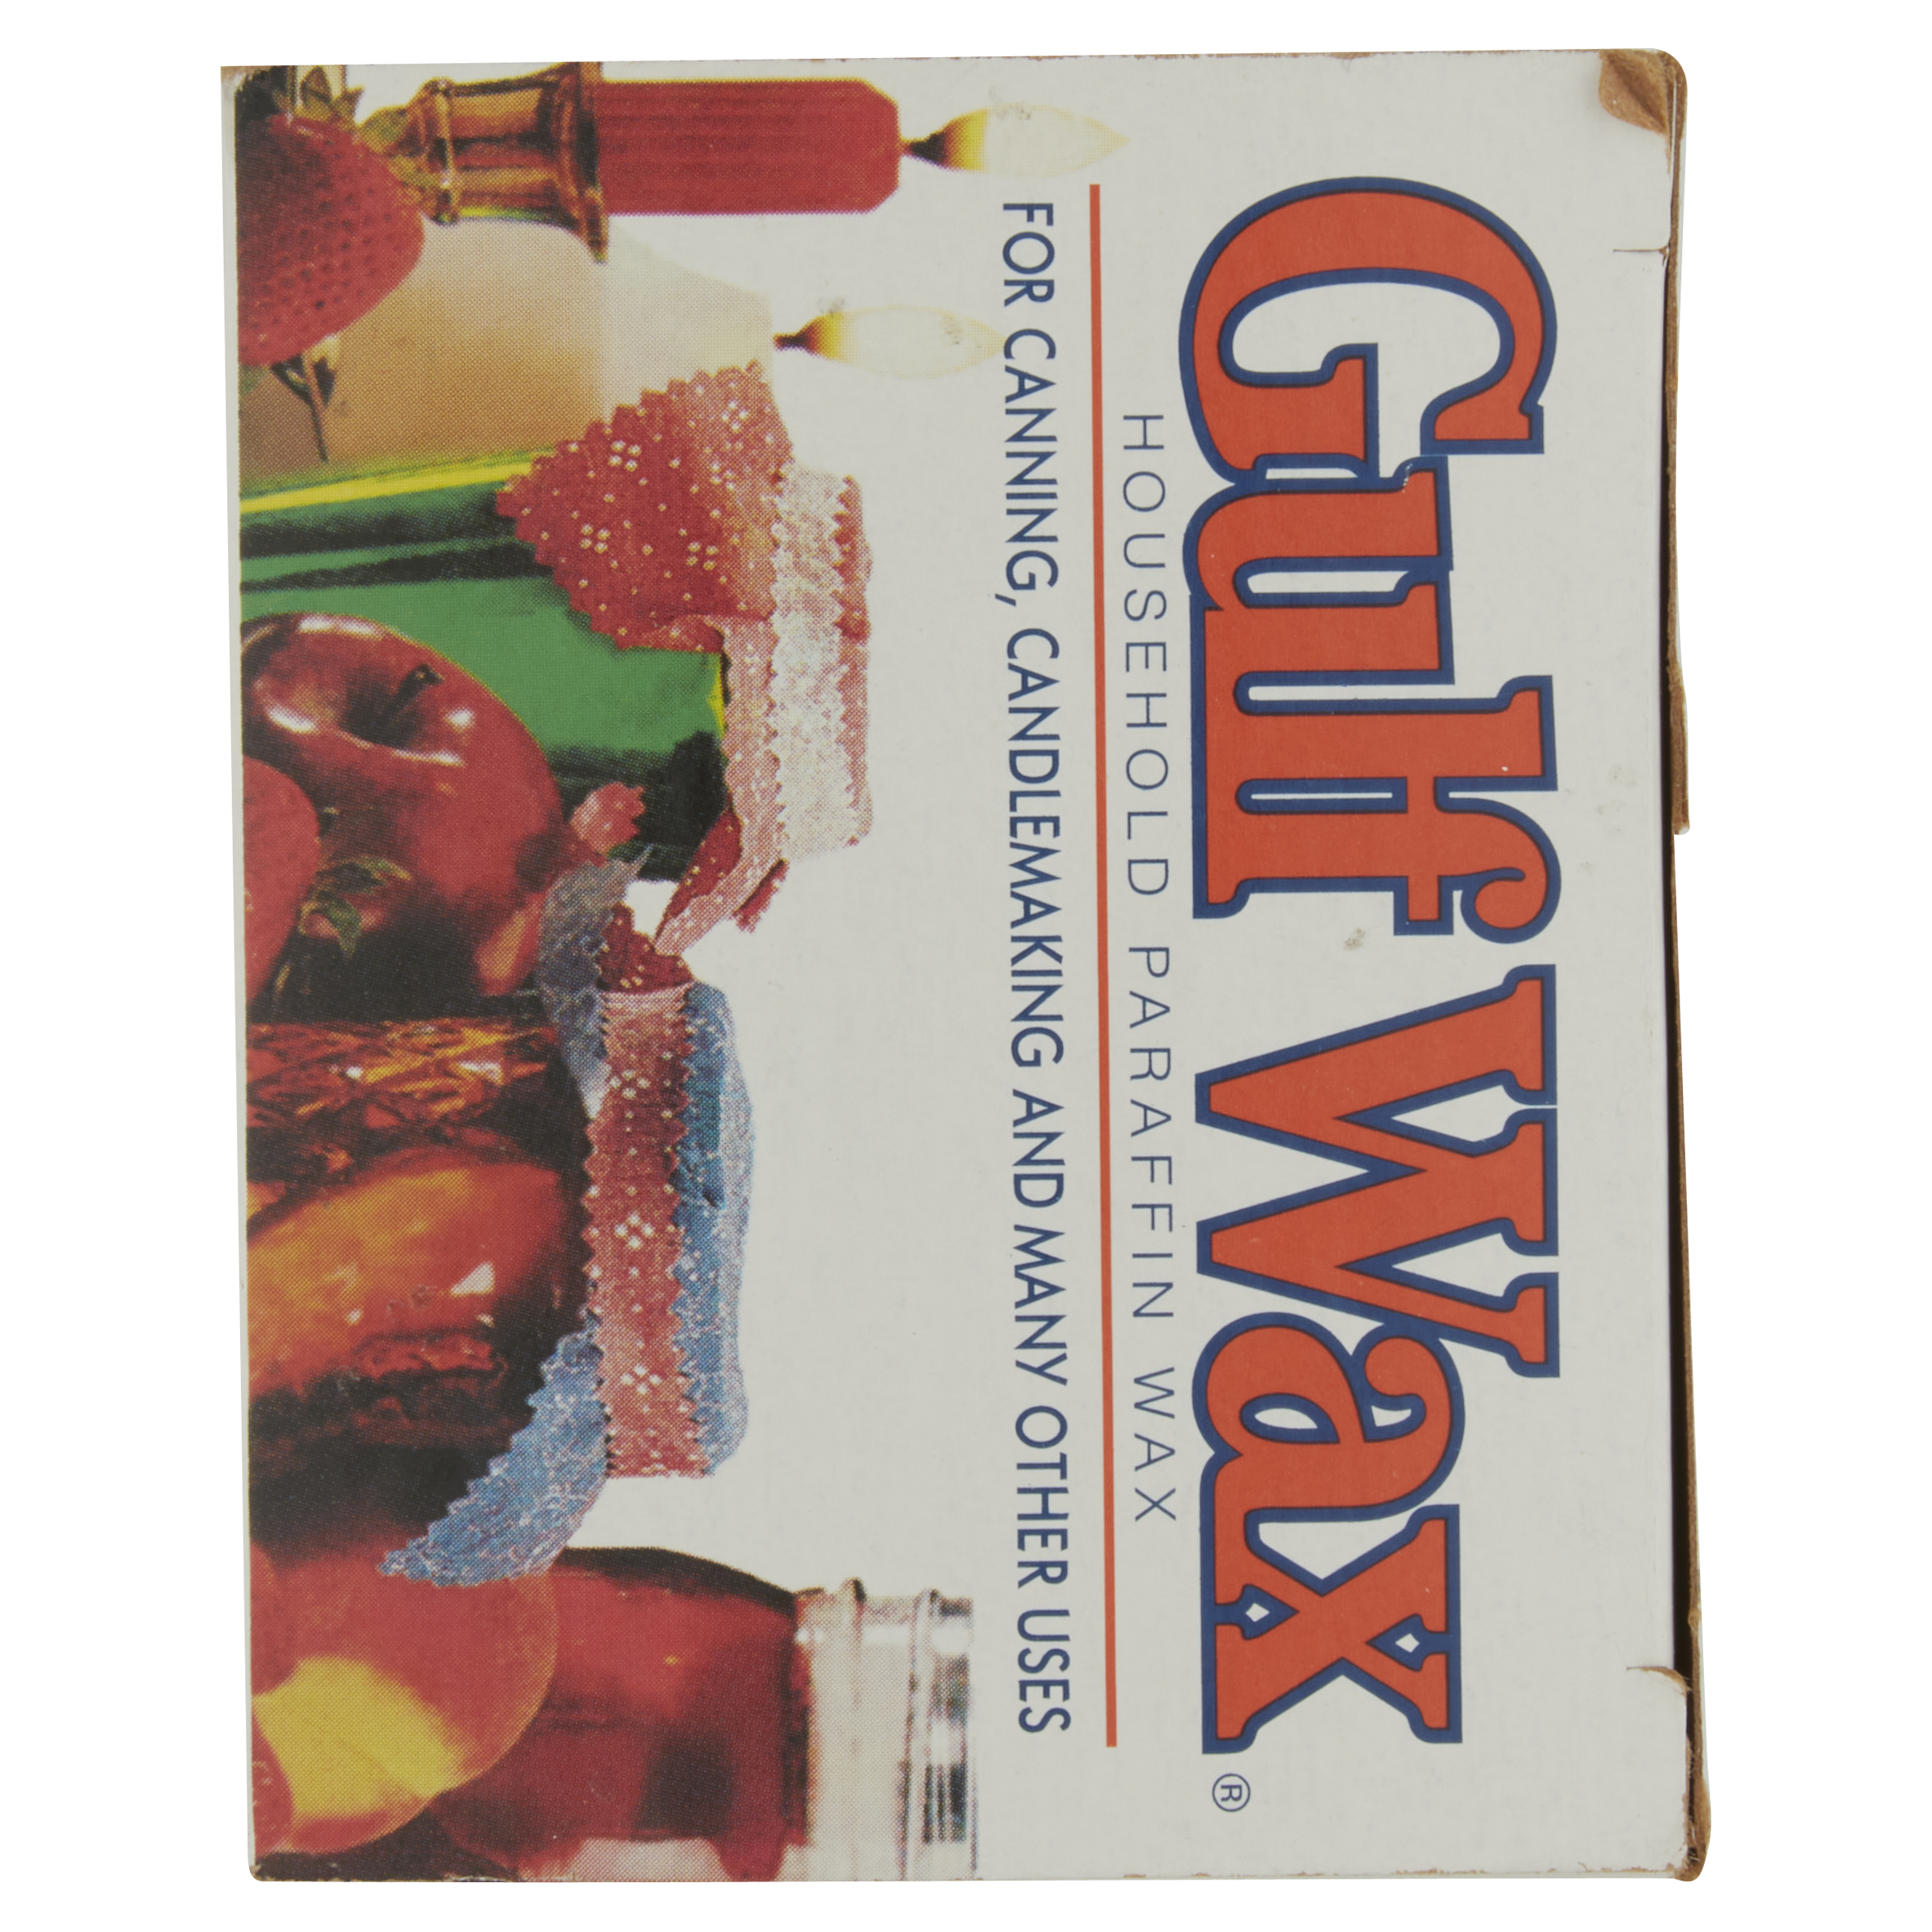 vintage Gulf Wax household paraffin wax 16 oz block Gulf Oil Corp